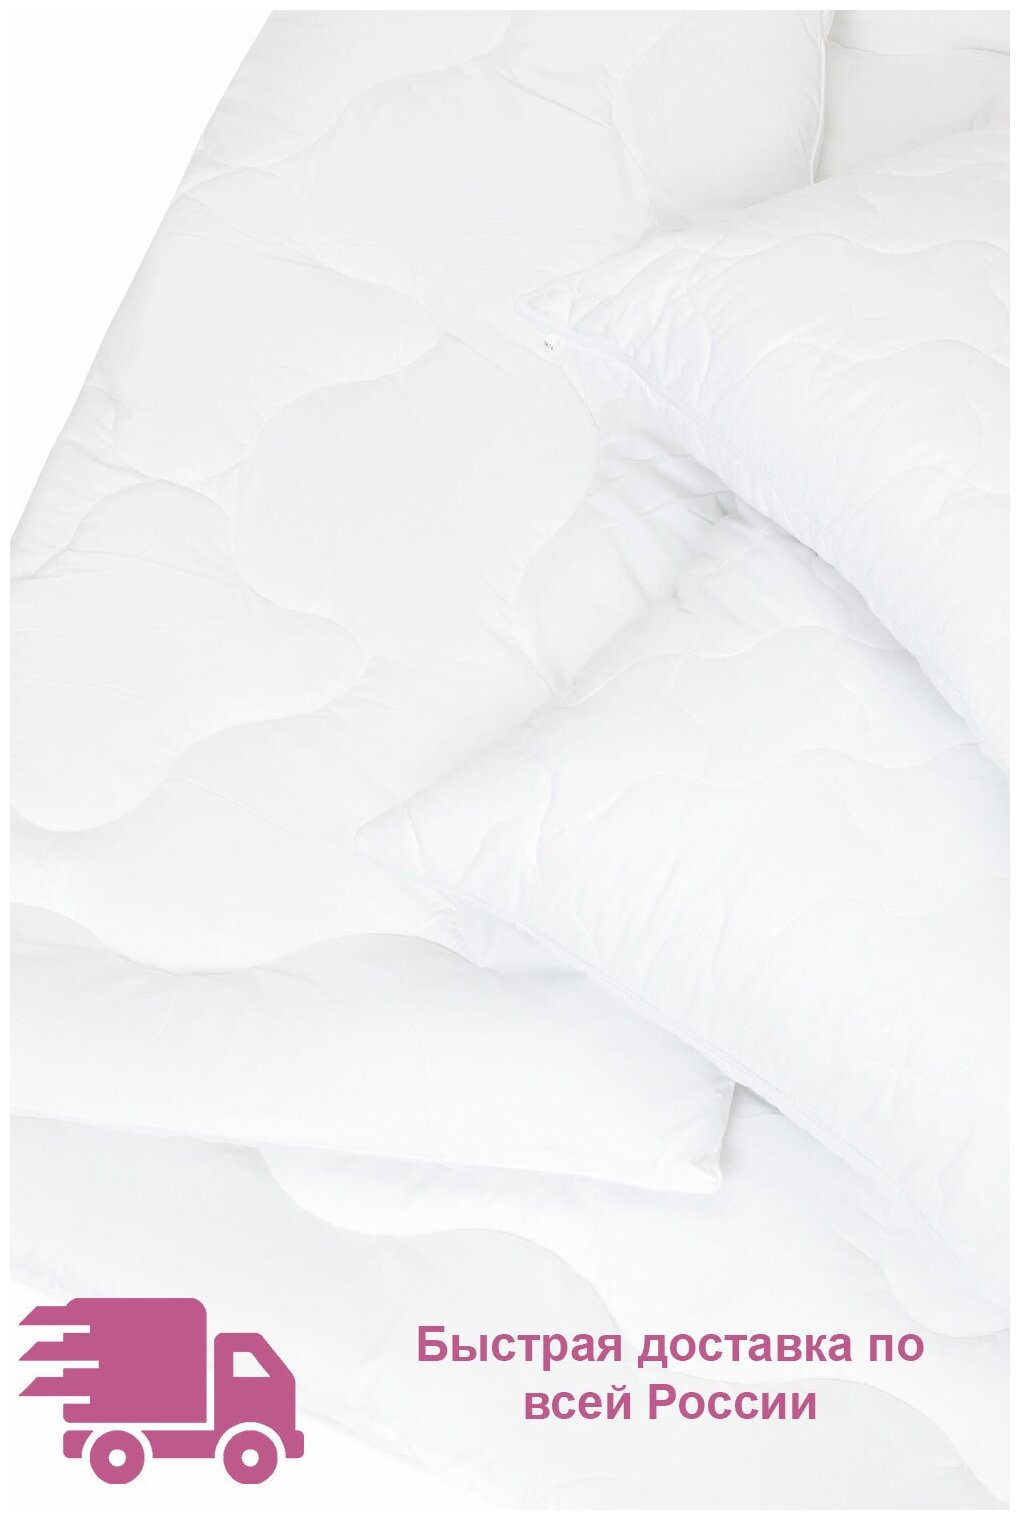 Одеяло силиконизированное волокно 1,5-спальное (140x205 см) "Валенсия", чехол - поликоттон (80% хлопок, 20% п/э), Ecotex - фотография № 5